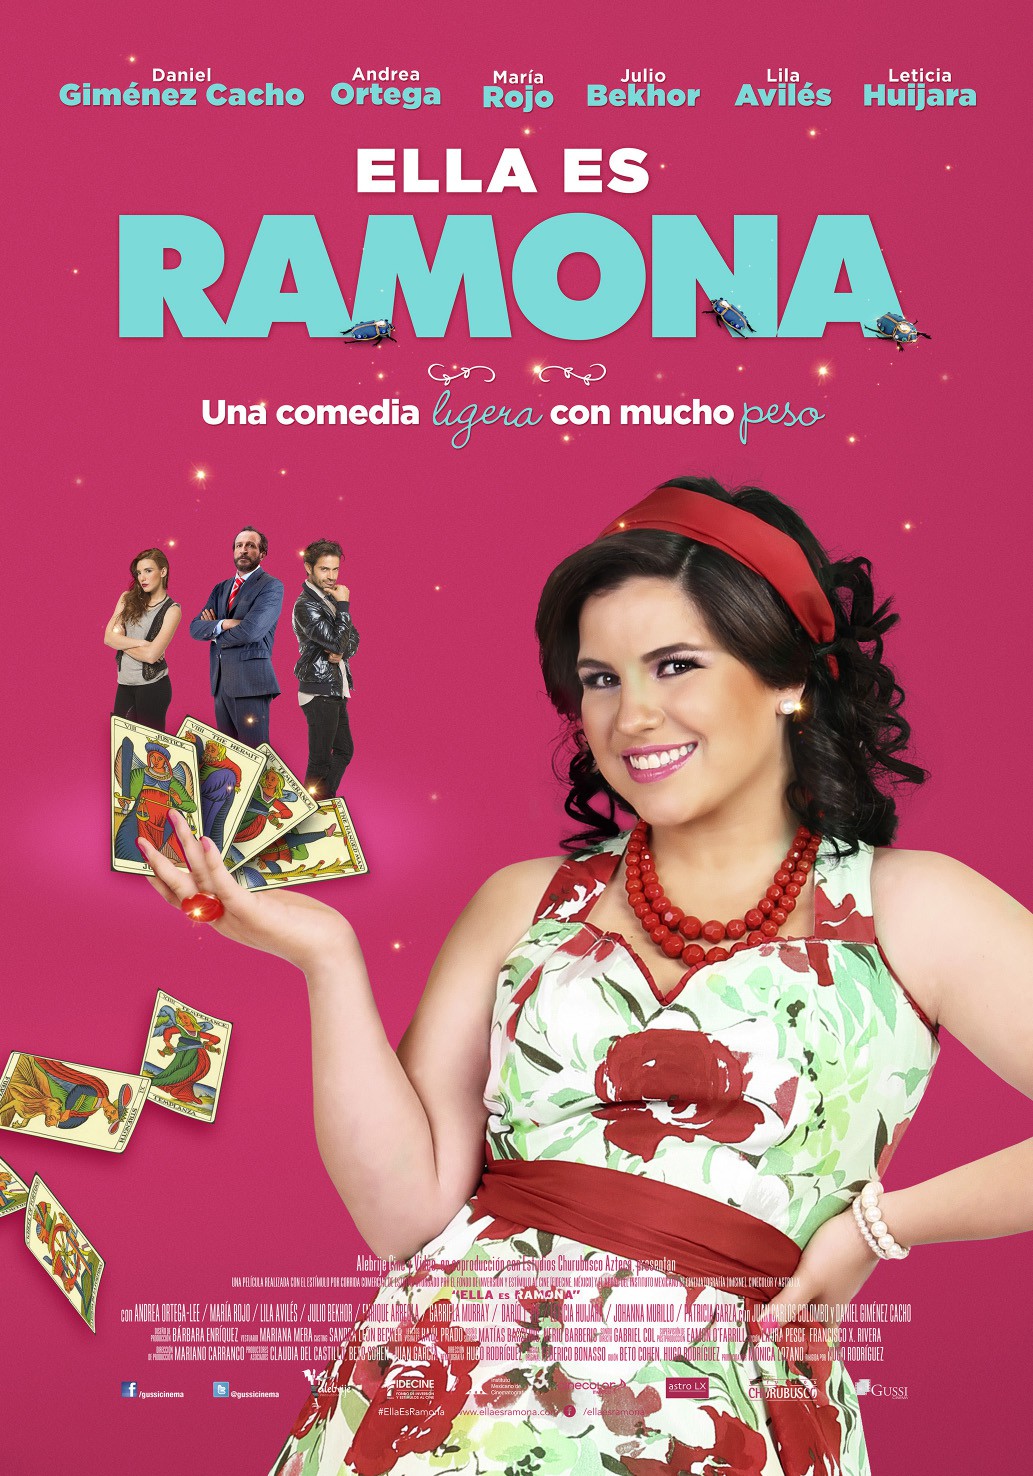 Extra Large Movie Poster Image for Ramona y los escarabajos (#1 of 2)